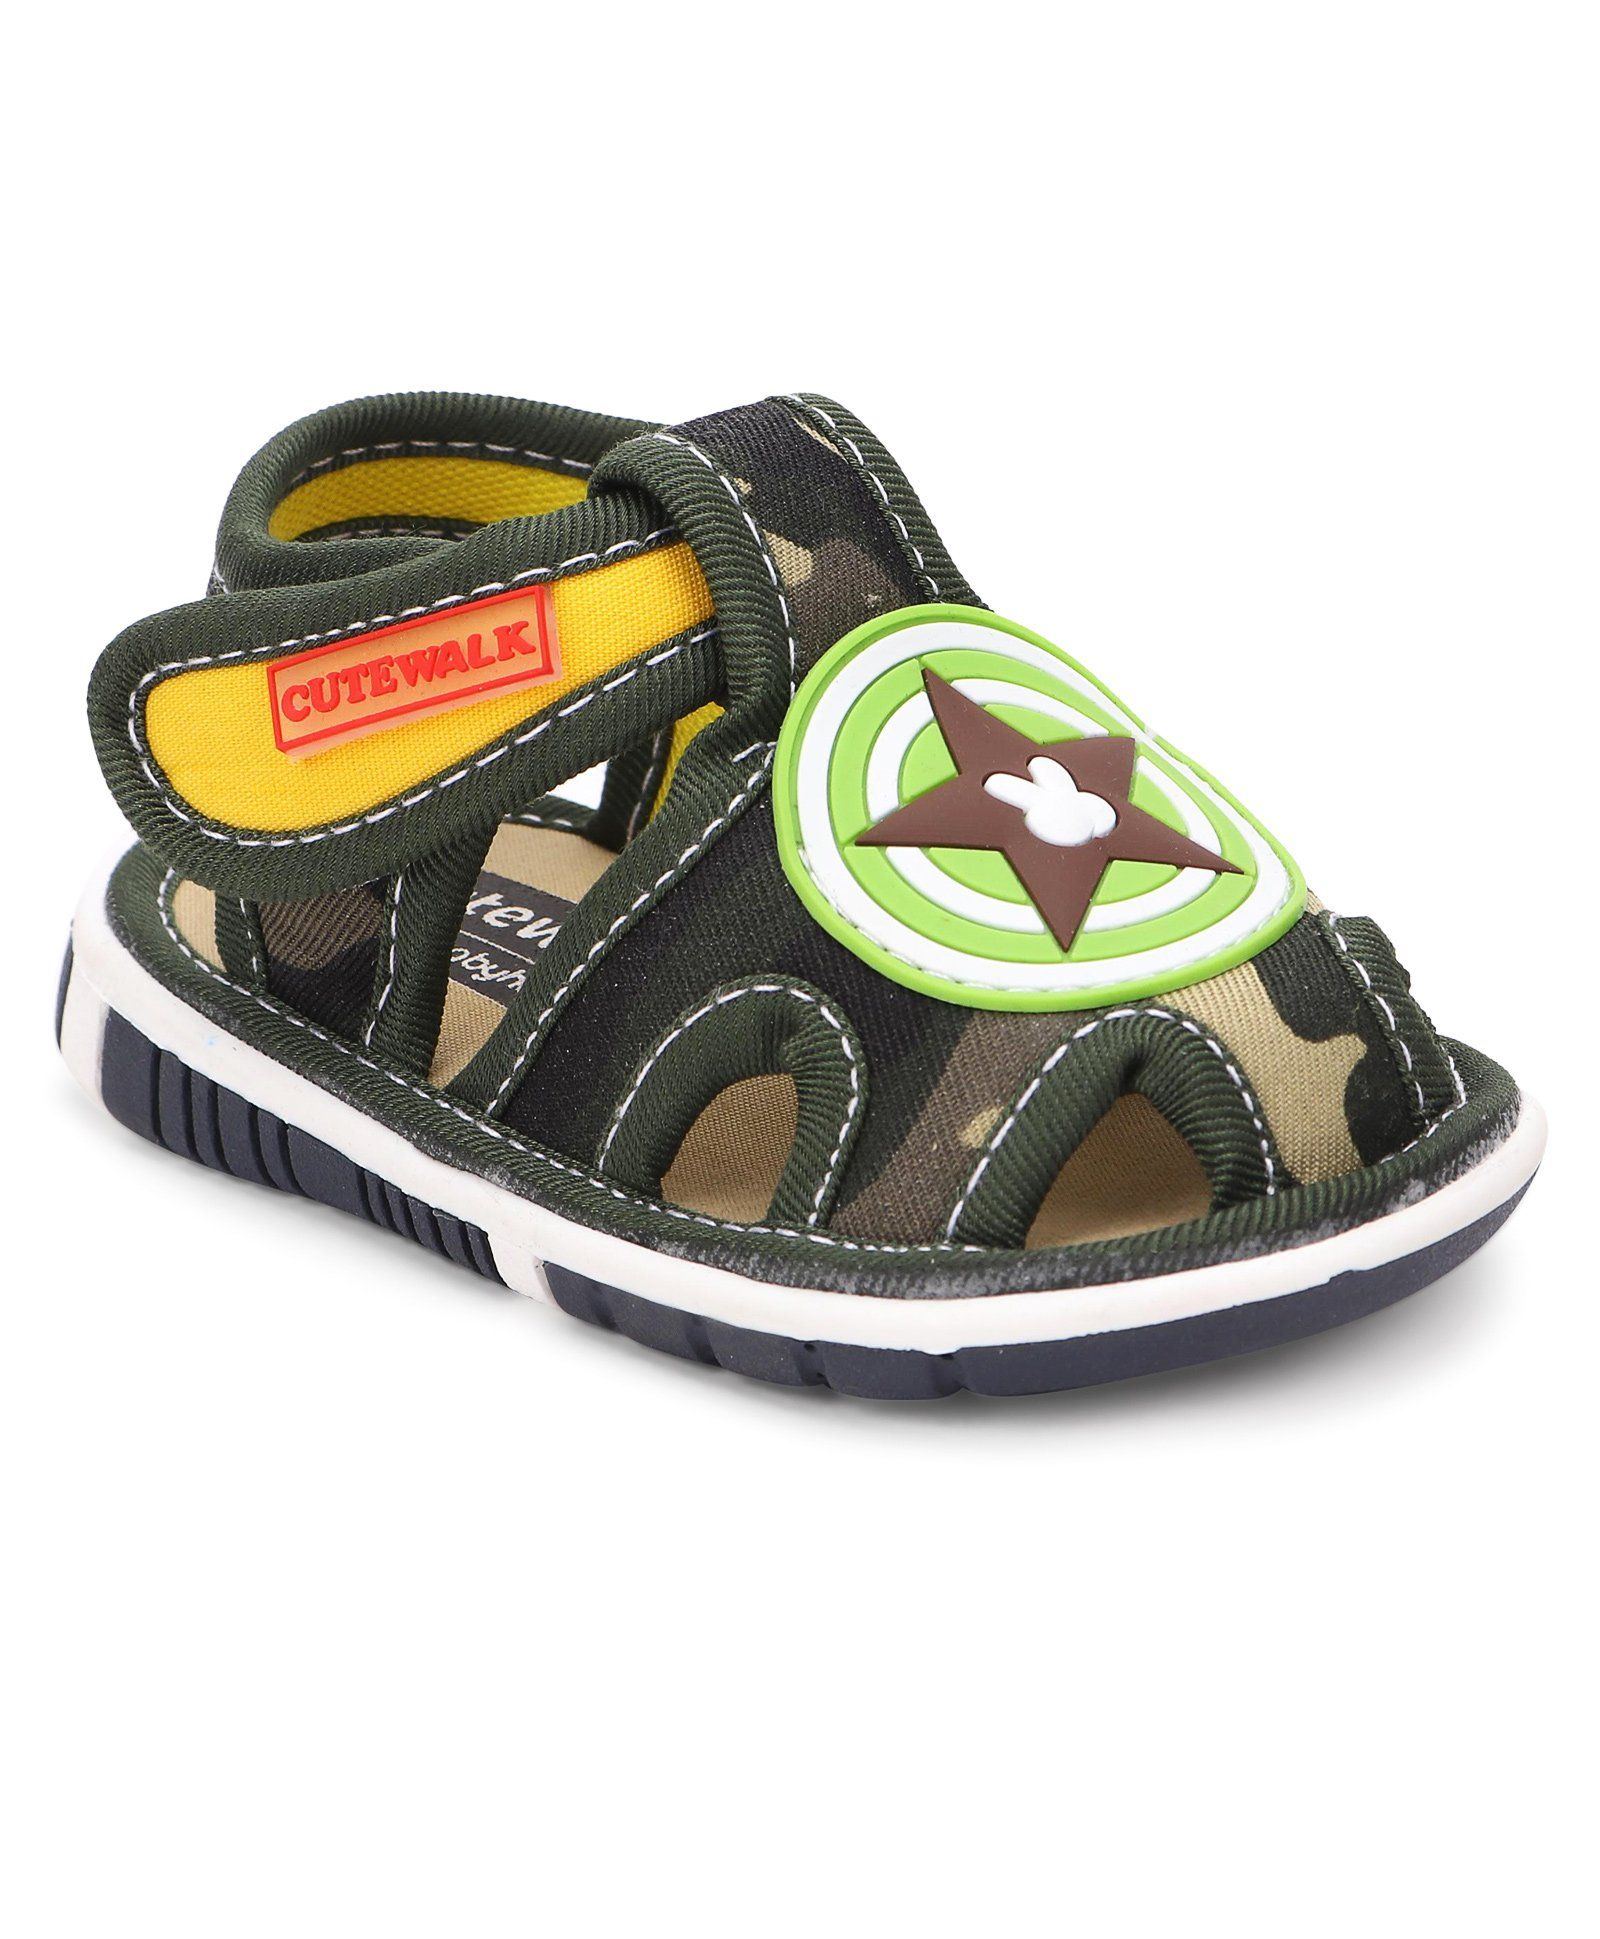 Cute Walk by Babyhug Sandals Star Motif - Green